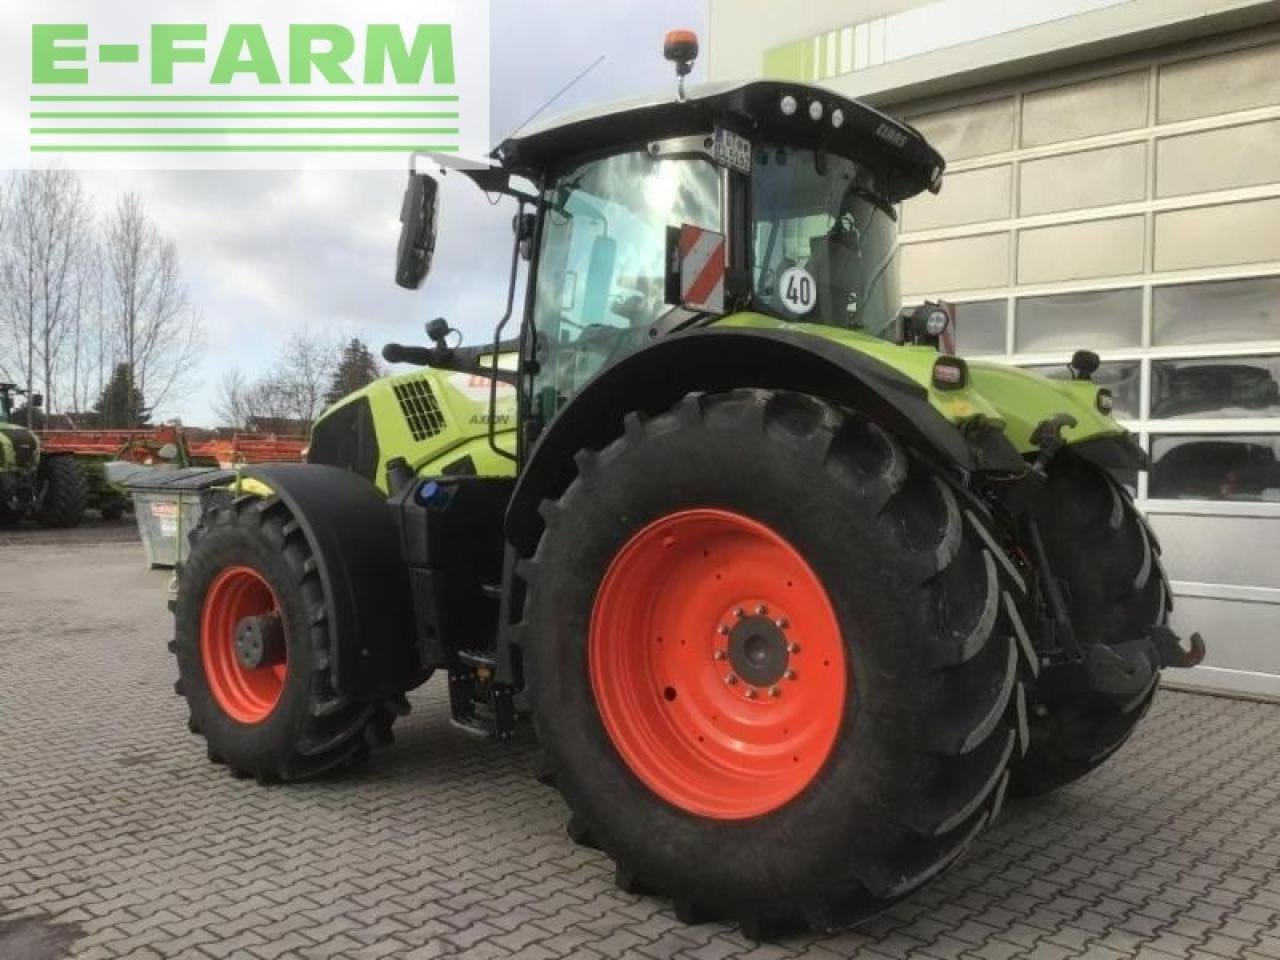 Farm tractor CLAAS axion 830 cmatic focus